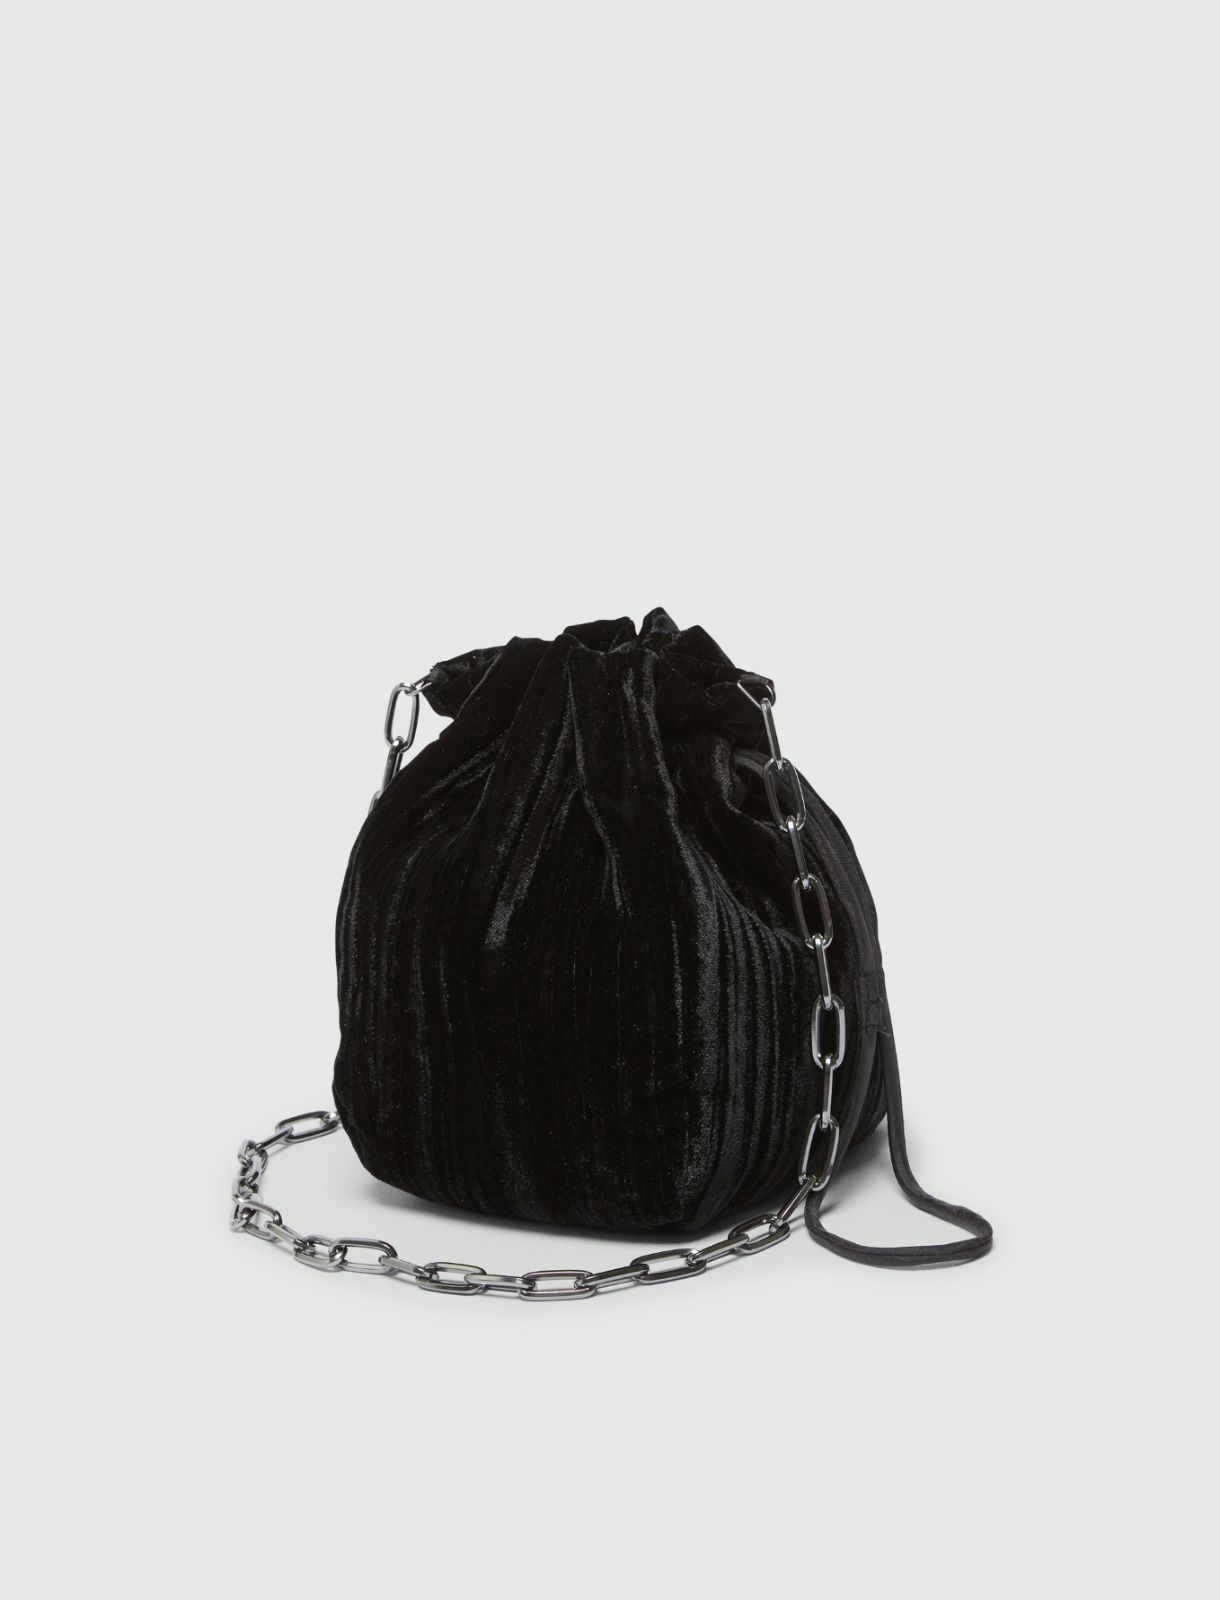 Velvet bag - Black - Marella - 2